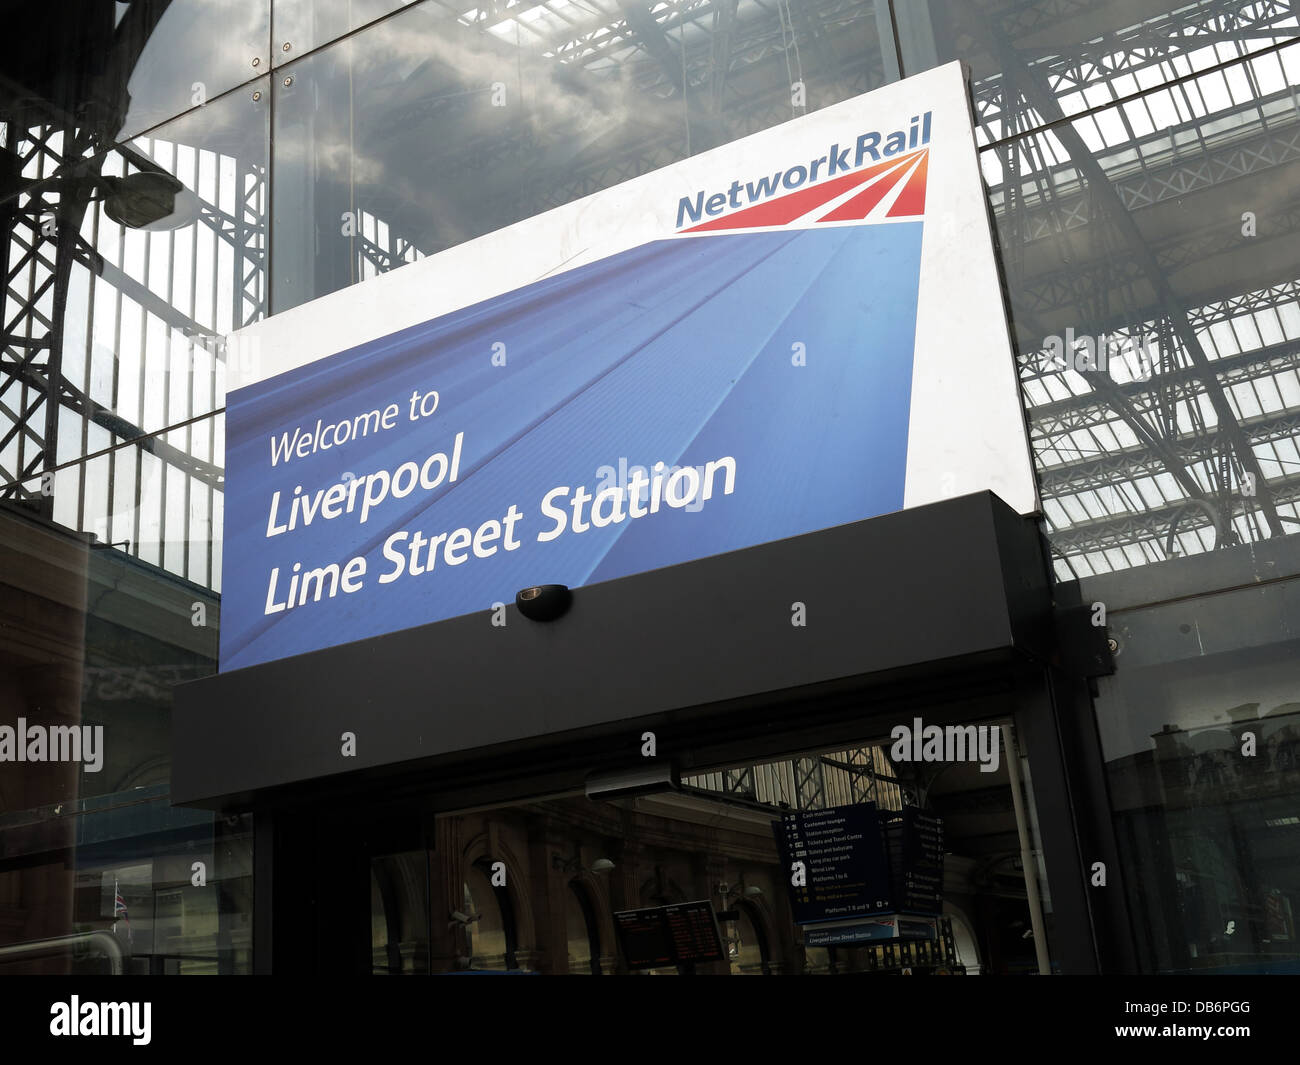 Bienvenue à la gare de Liverpool Lime Street sign de Network Rail en anglais ville, en face de la gare principale de l'auvent Banque D'Images